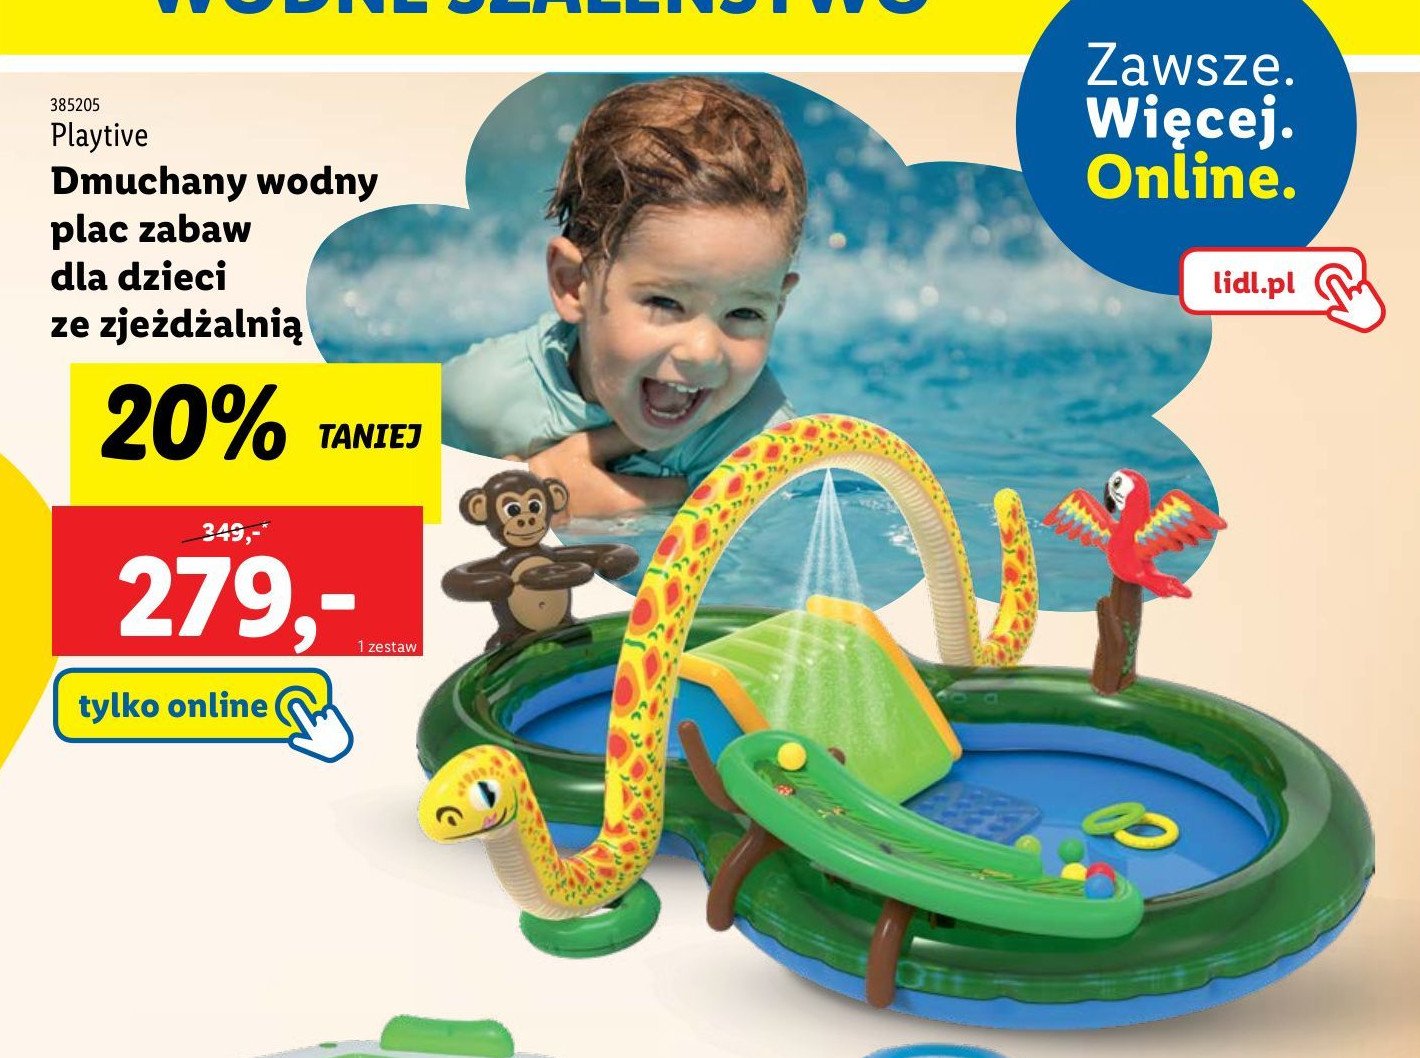 Wodny plac zabaw ze zjeżdżalnią Playtive promocja